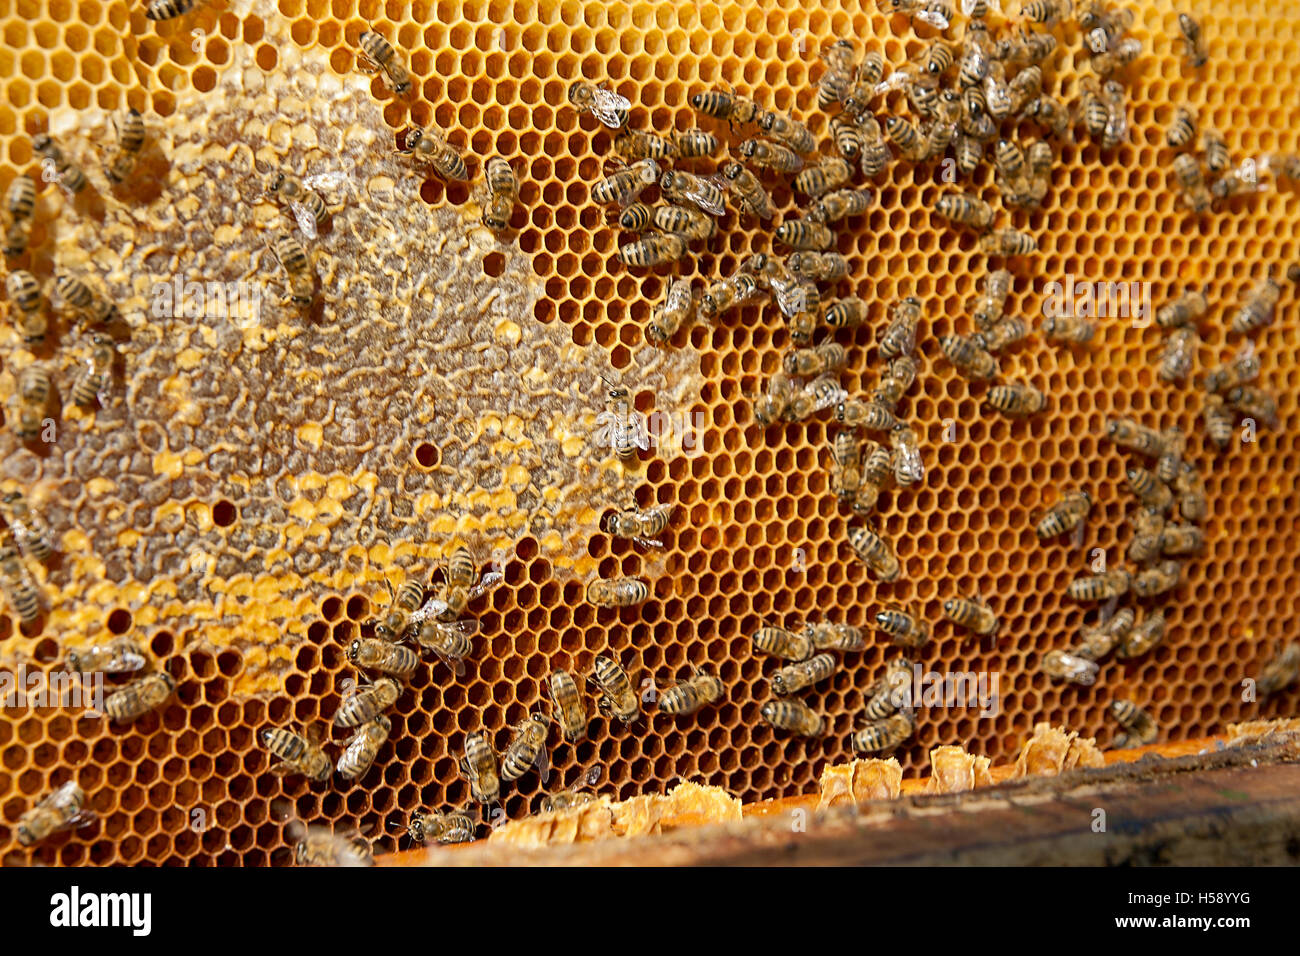 Vue rapprochée du groupe de travail sur le nid d'abeilles avec du miel doux. Le miel est l'apiculture produits sains. Le miel d'abeilles recueillies Banque D'Images